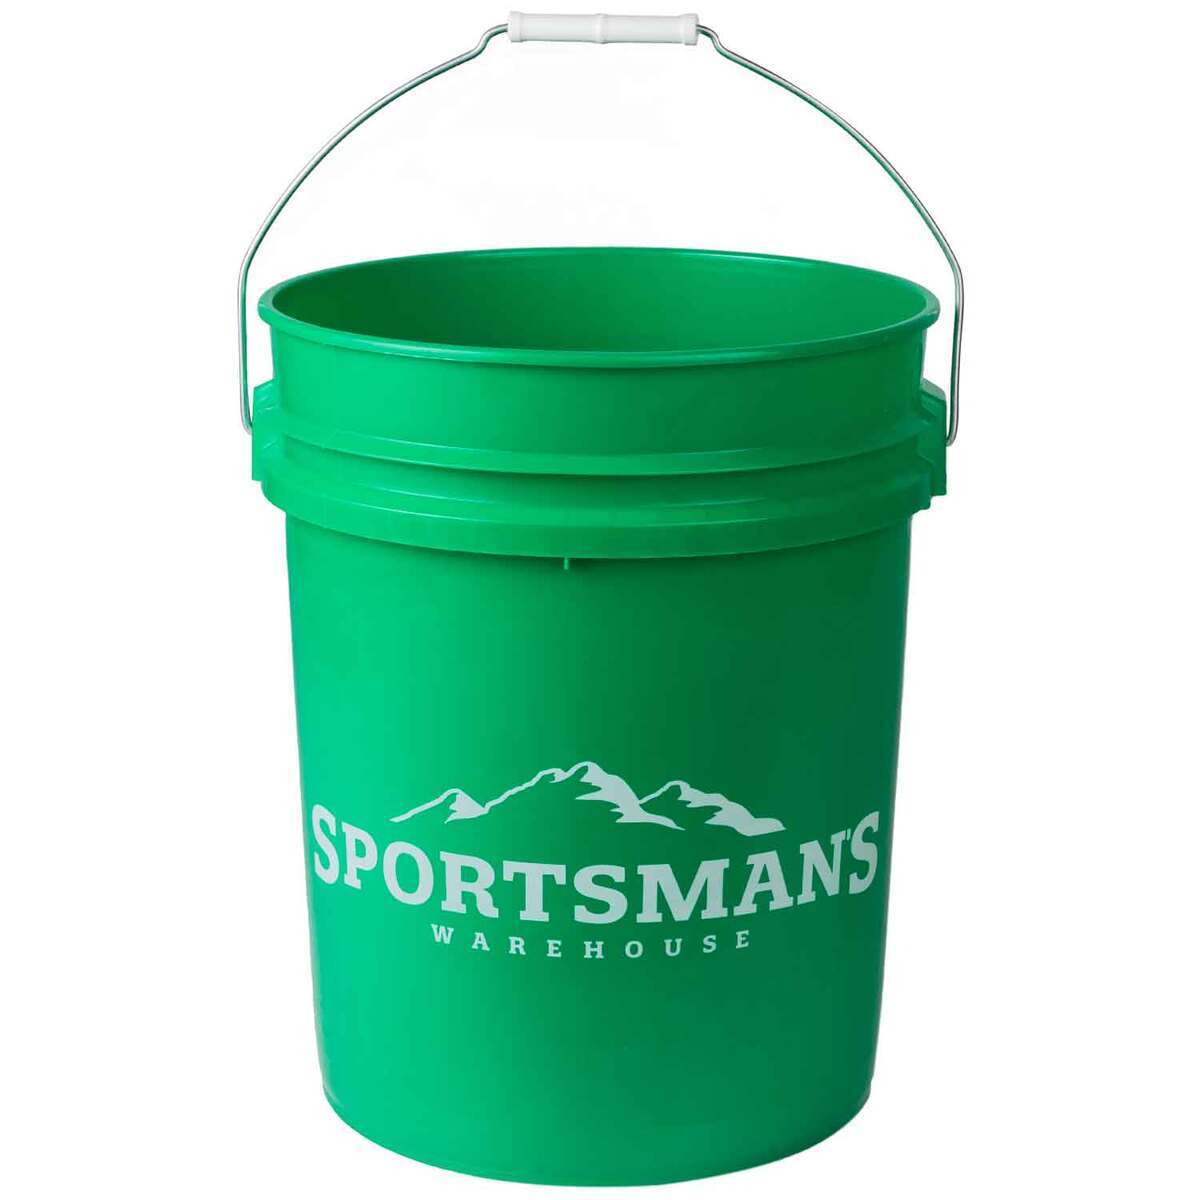 https://www.sportsmans.com/medias/sportsmans-warehouse-5-gallon-bucket-green-1855016-1.jpg?context=bWFzdGVyfGltYWdlc3w0MzgwNHxpbWFnZS9qcGVnfGFESTJMMmd6T0M4eE1Ua3pOalF6TlRFd09Ua3hPQzh4TWpBd0xXTnZiblpsY25OcGIyNUdiM0p0WVhSZlltRnpaUzFqYjI1MlpYSnphVzl1Um05eWJXRjBYM050ZHkweE9EVTFNREUyTFRFdWFuQm58ZTYxOWNhZGZiOTVhODE2MTFiNmEzYmI1YmJhMDJiMGJjNGMxMDc4MTAyNDk2YmE3NWE2MDVmOGE1YmVjYzgxMg